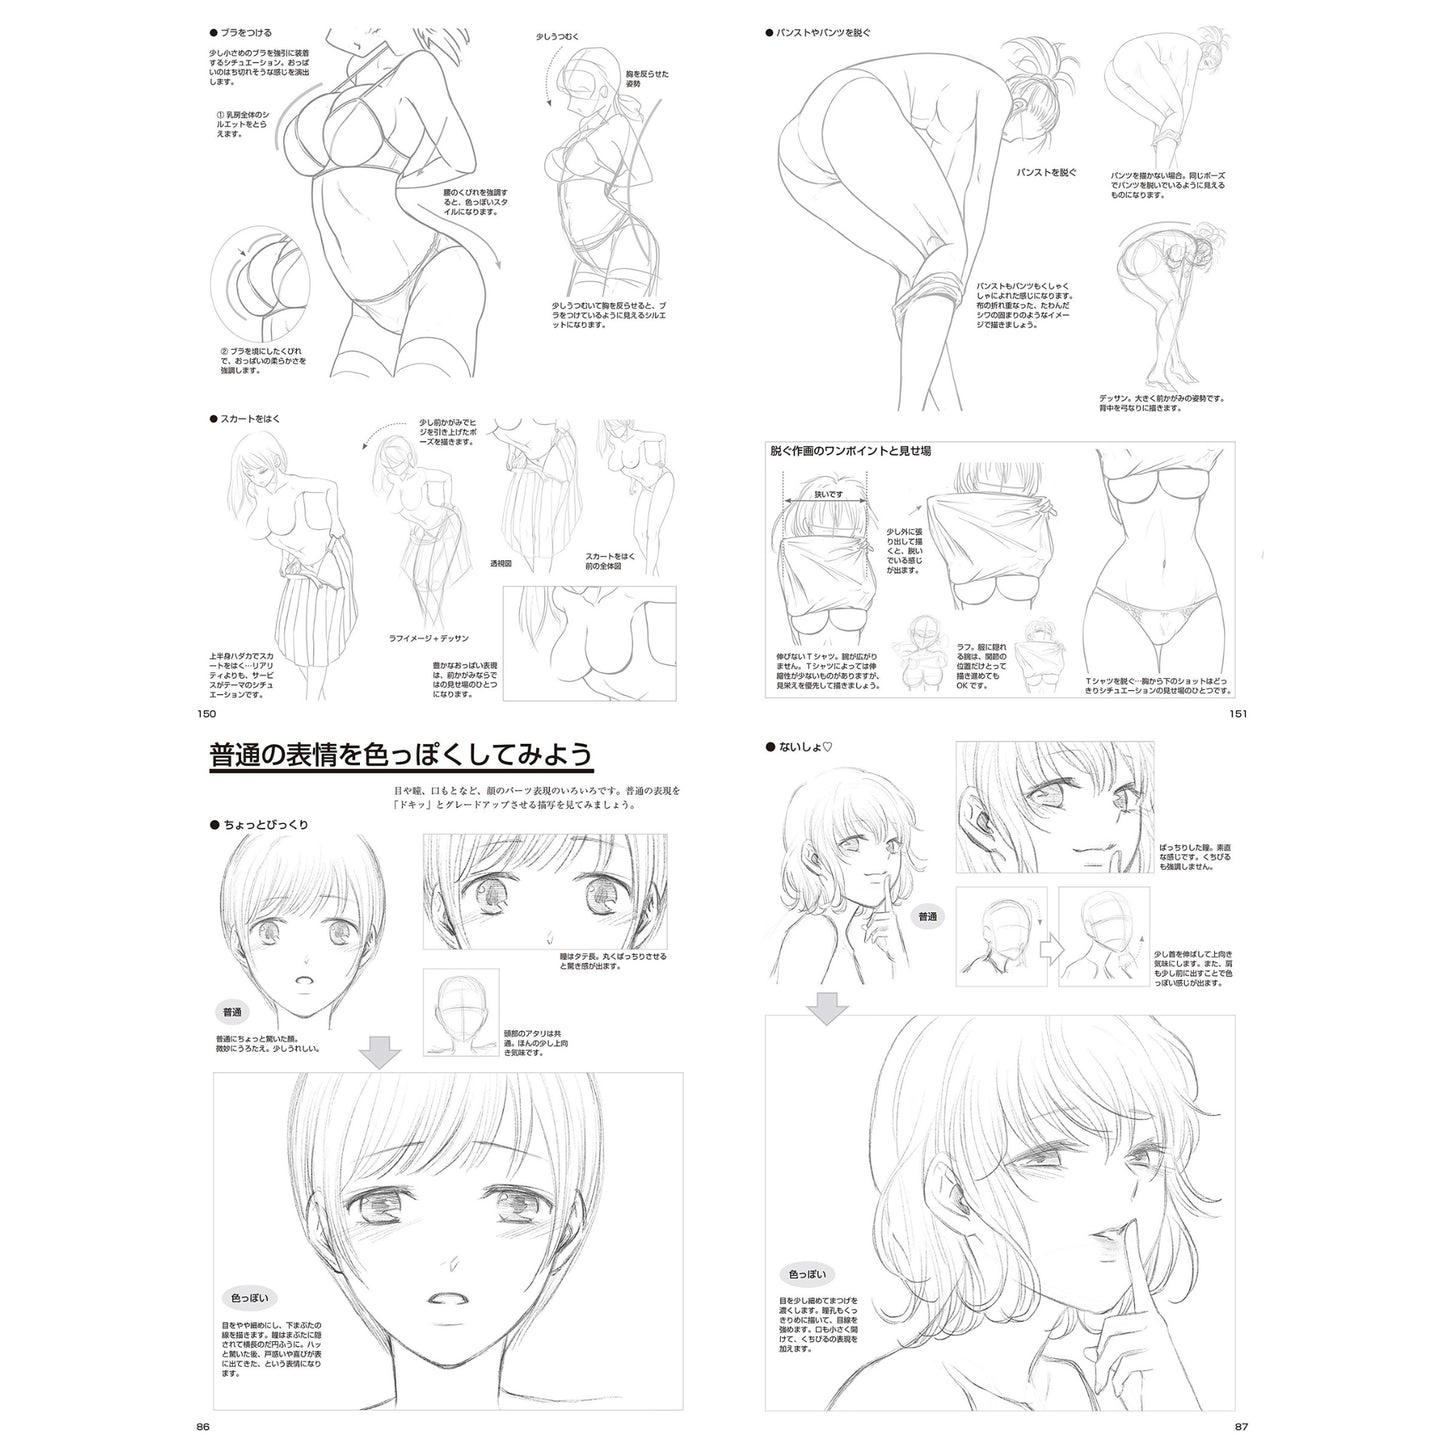 How to draw - jap. Zeichenbuch -  Zeichentechnik sexy Charas